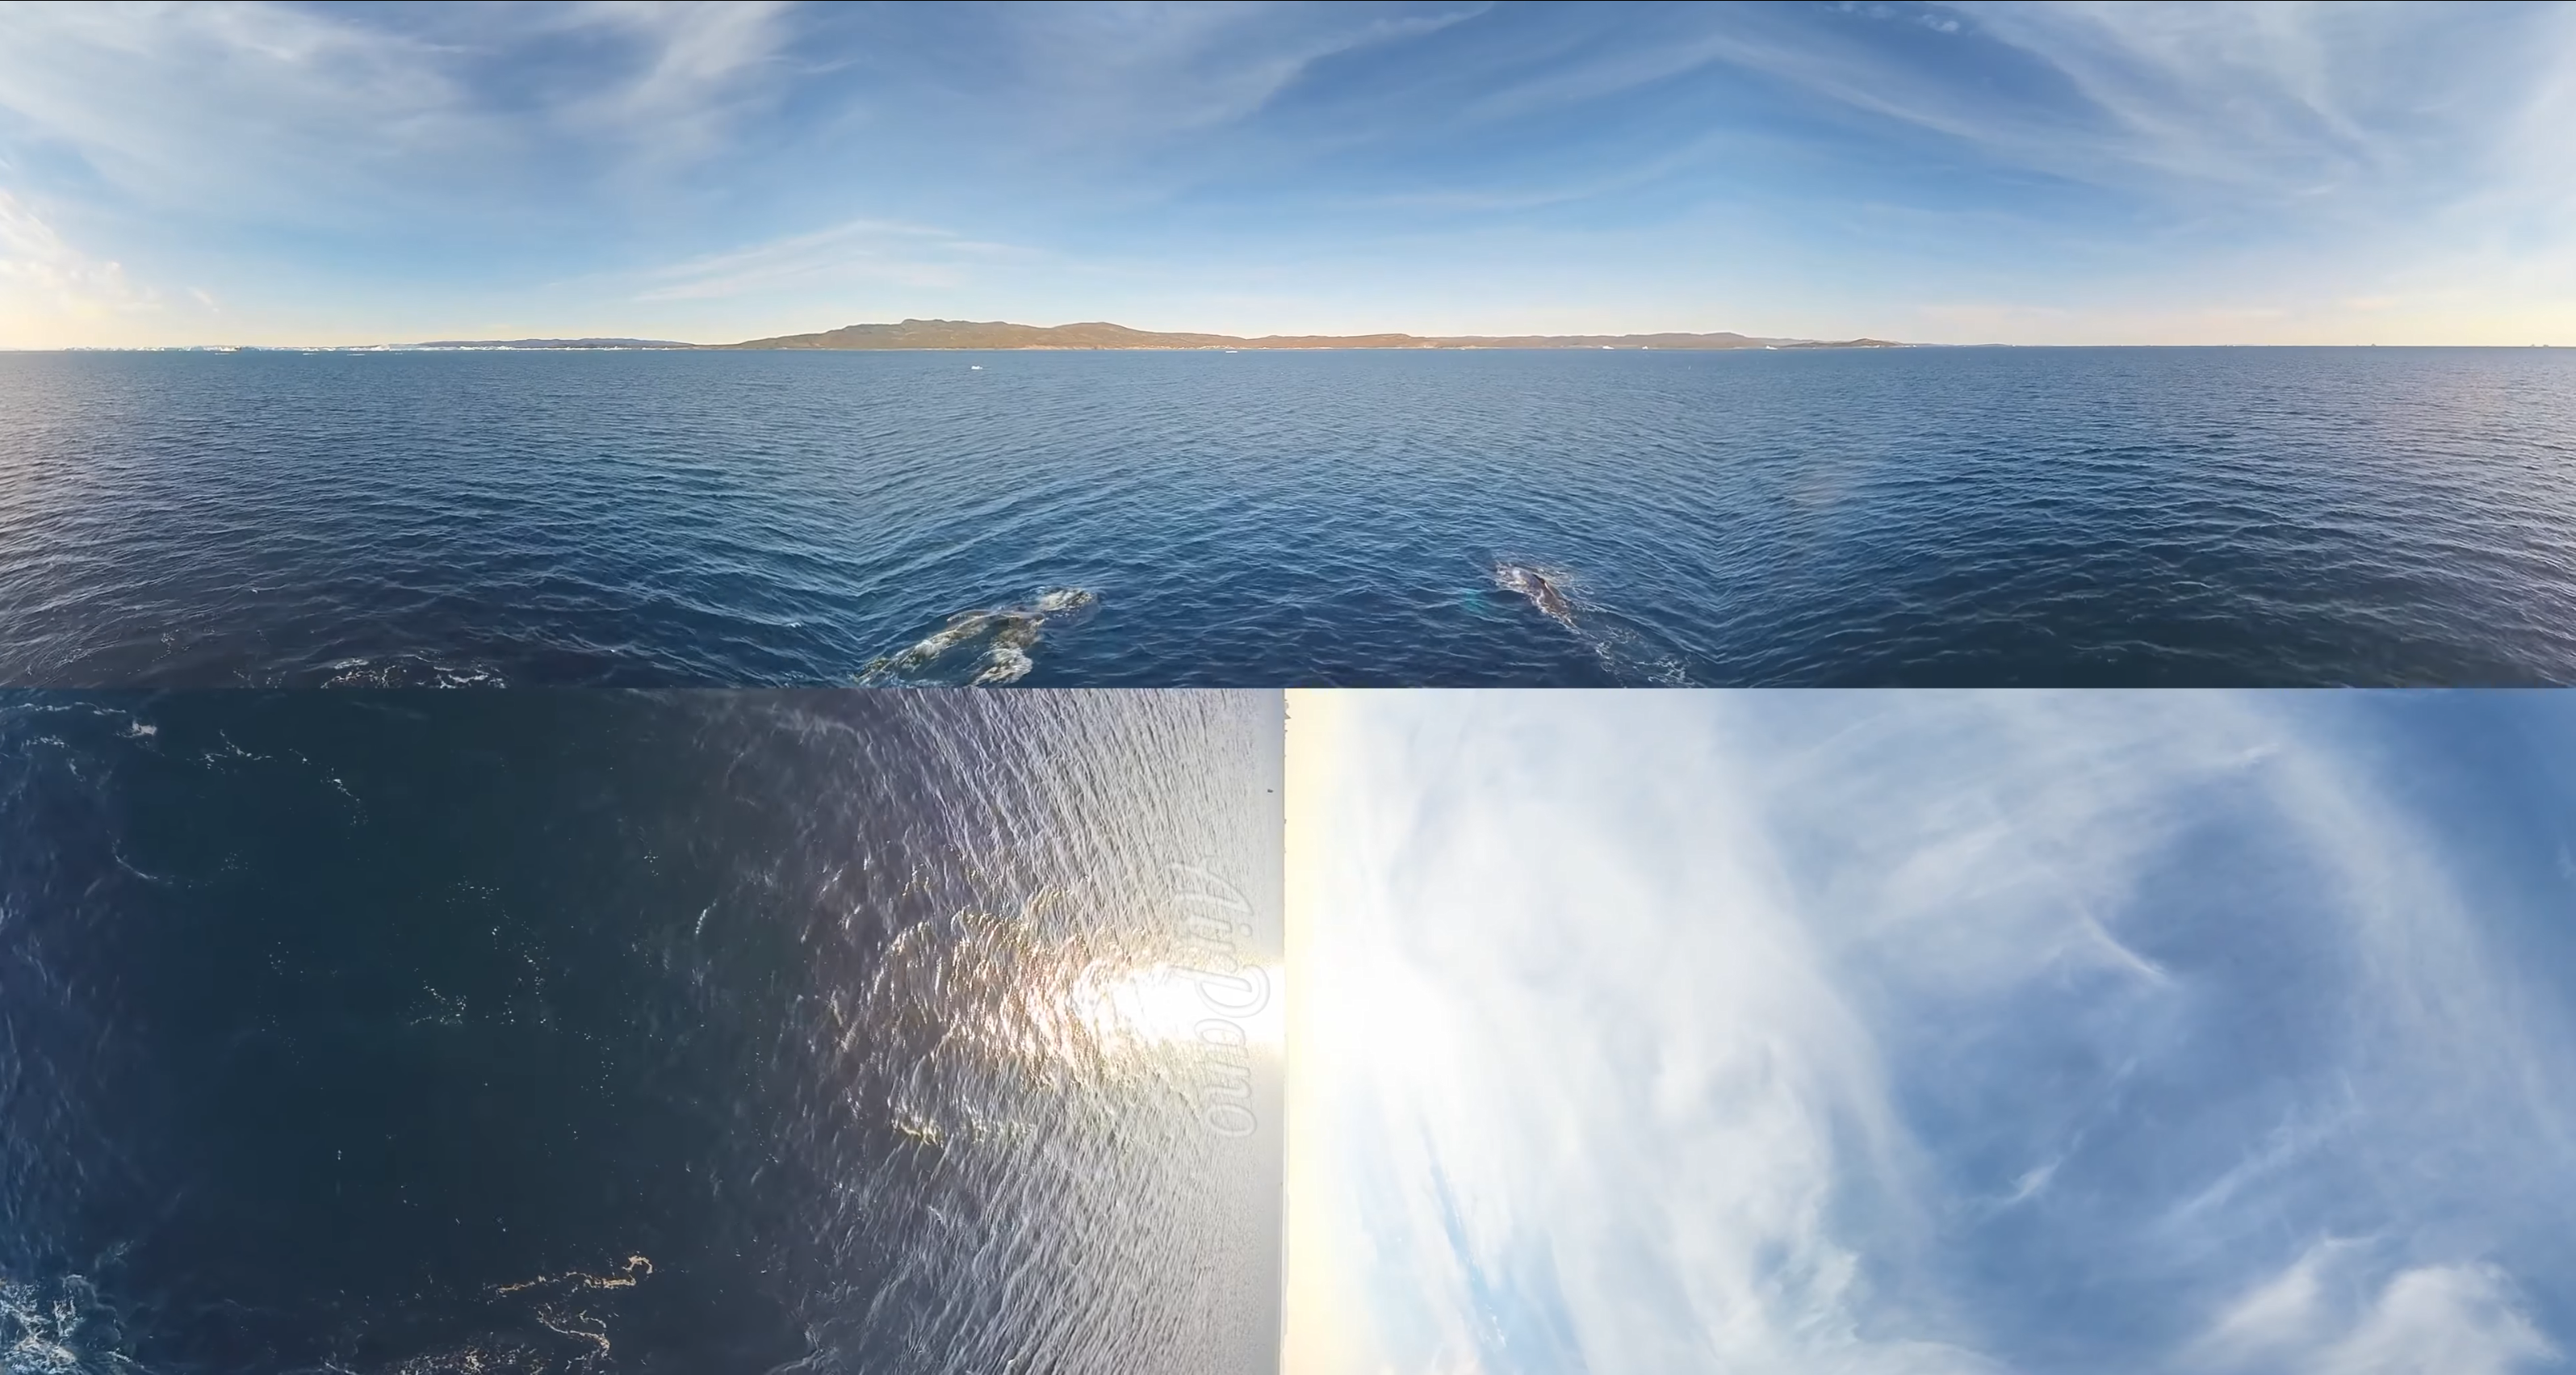 360°视频，格陵兰岛。冰山之岛。4K空中视频【814MB】【04:47】